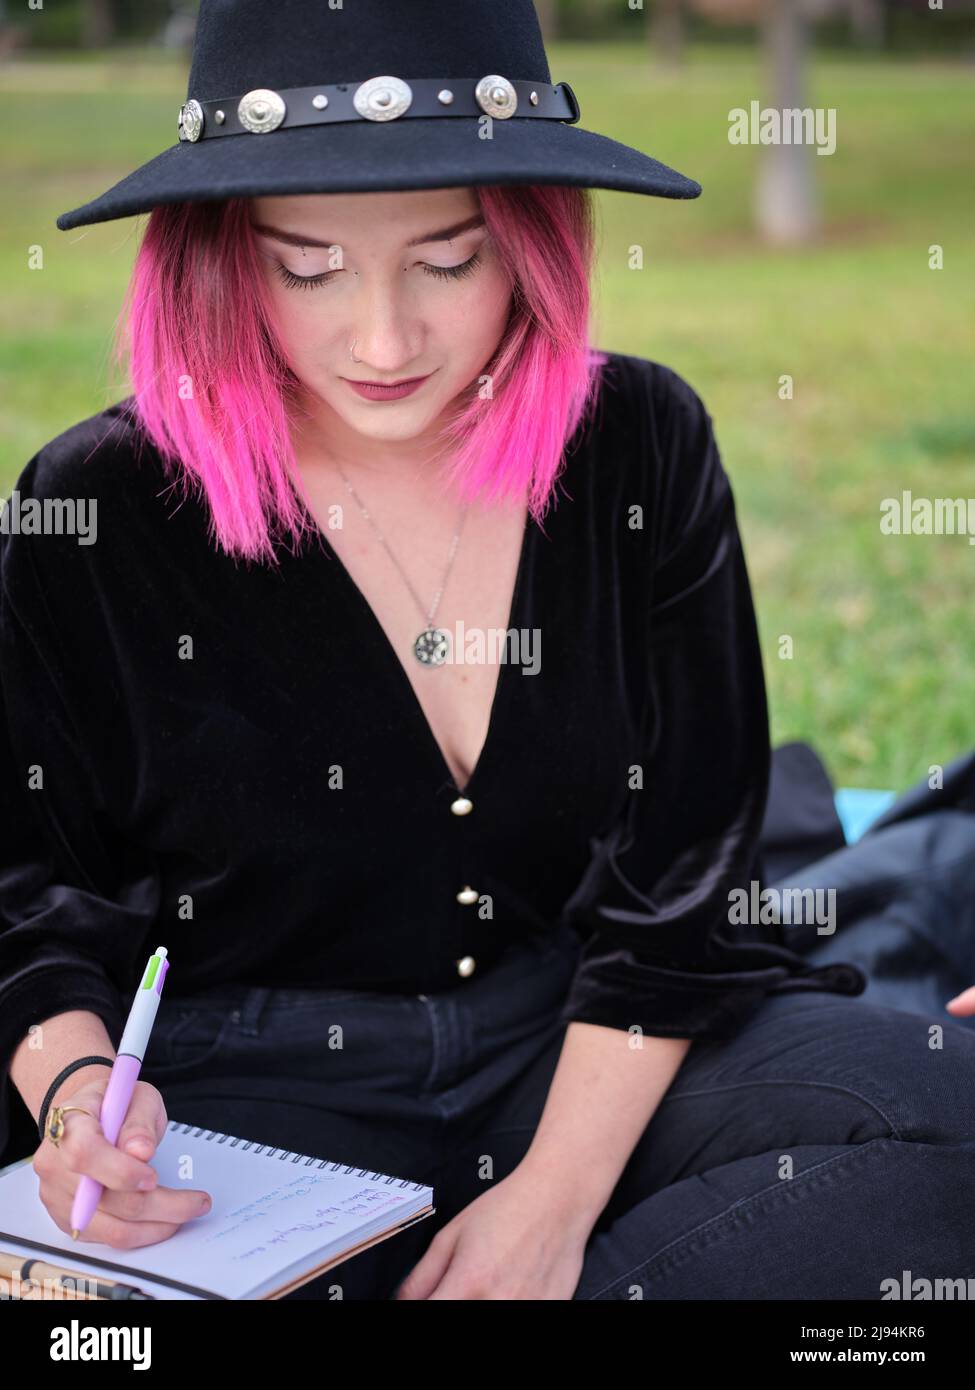 ritratto di una giovane ragazza con capelli rosa e un cappello nero seduto con un taccuino Foto Stock